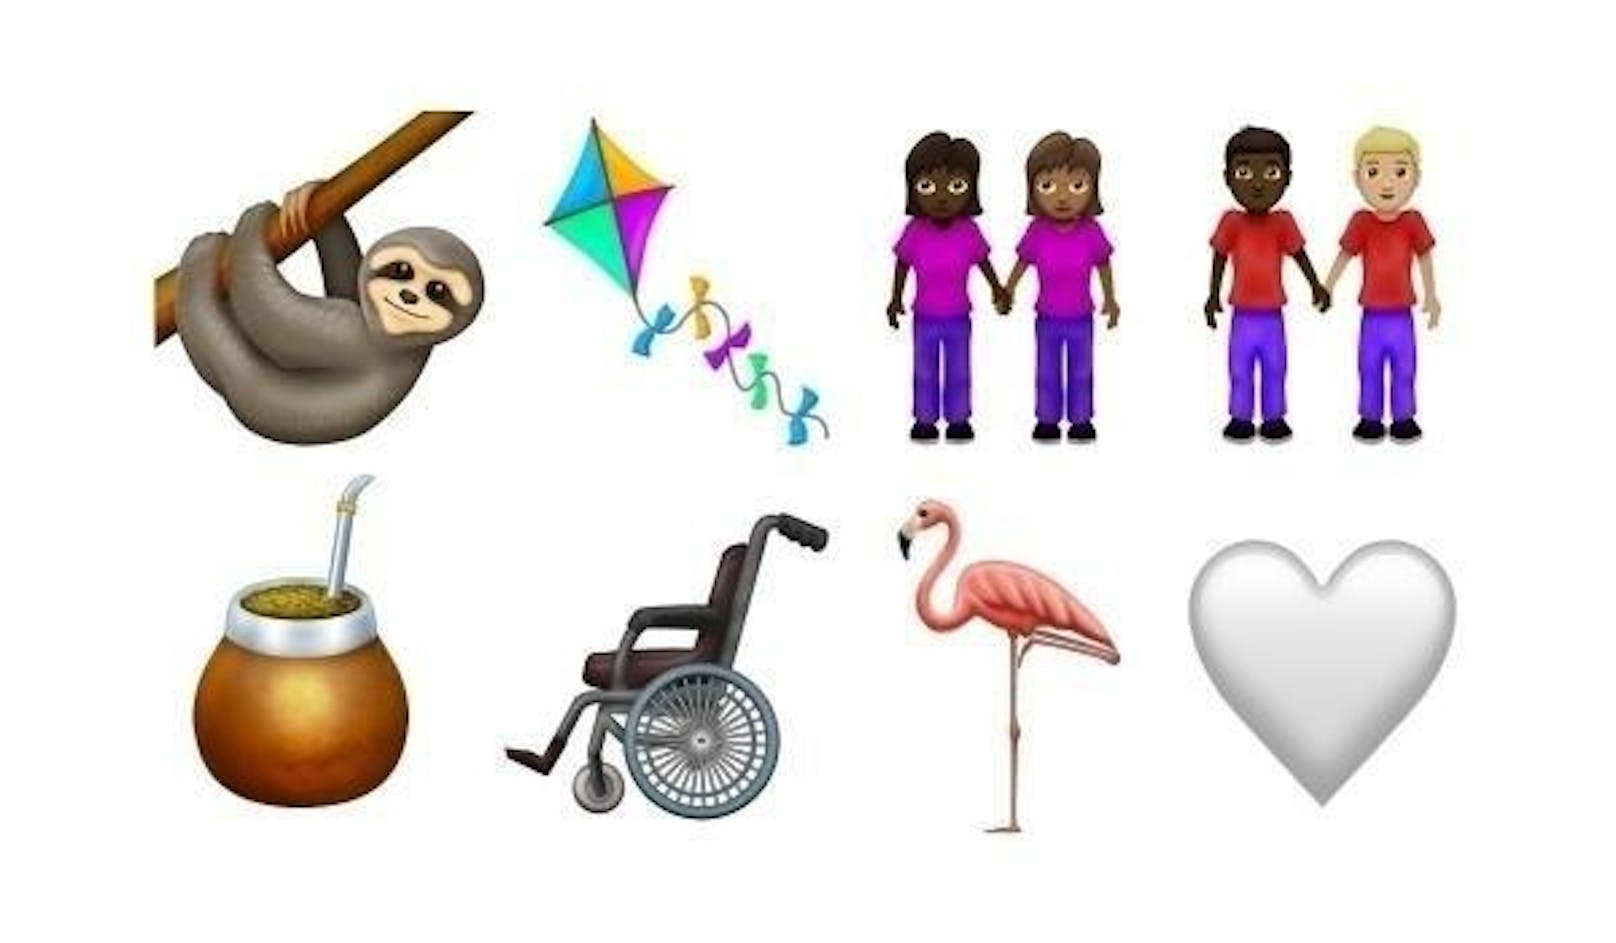 Einige der Emoji-Kandidaten, die im nächsten Jahr auf unser Smartphone kommen könnten. Darunter sind ein Faultier, ein Rollstuhl und eben ein Flamingo.